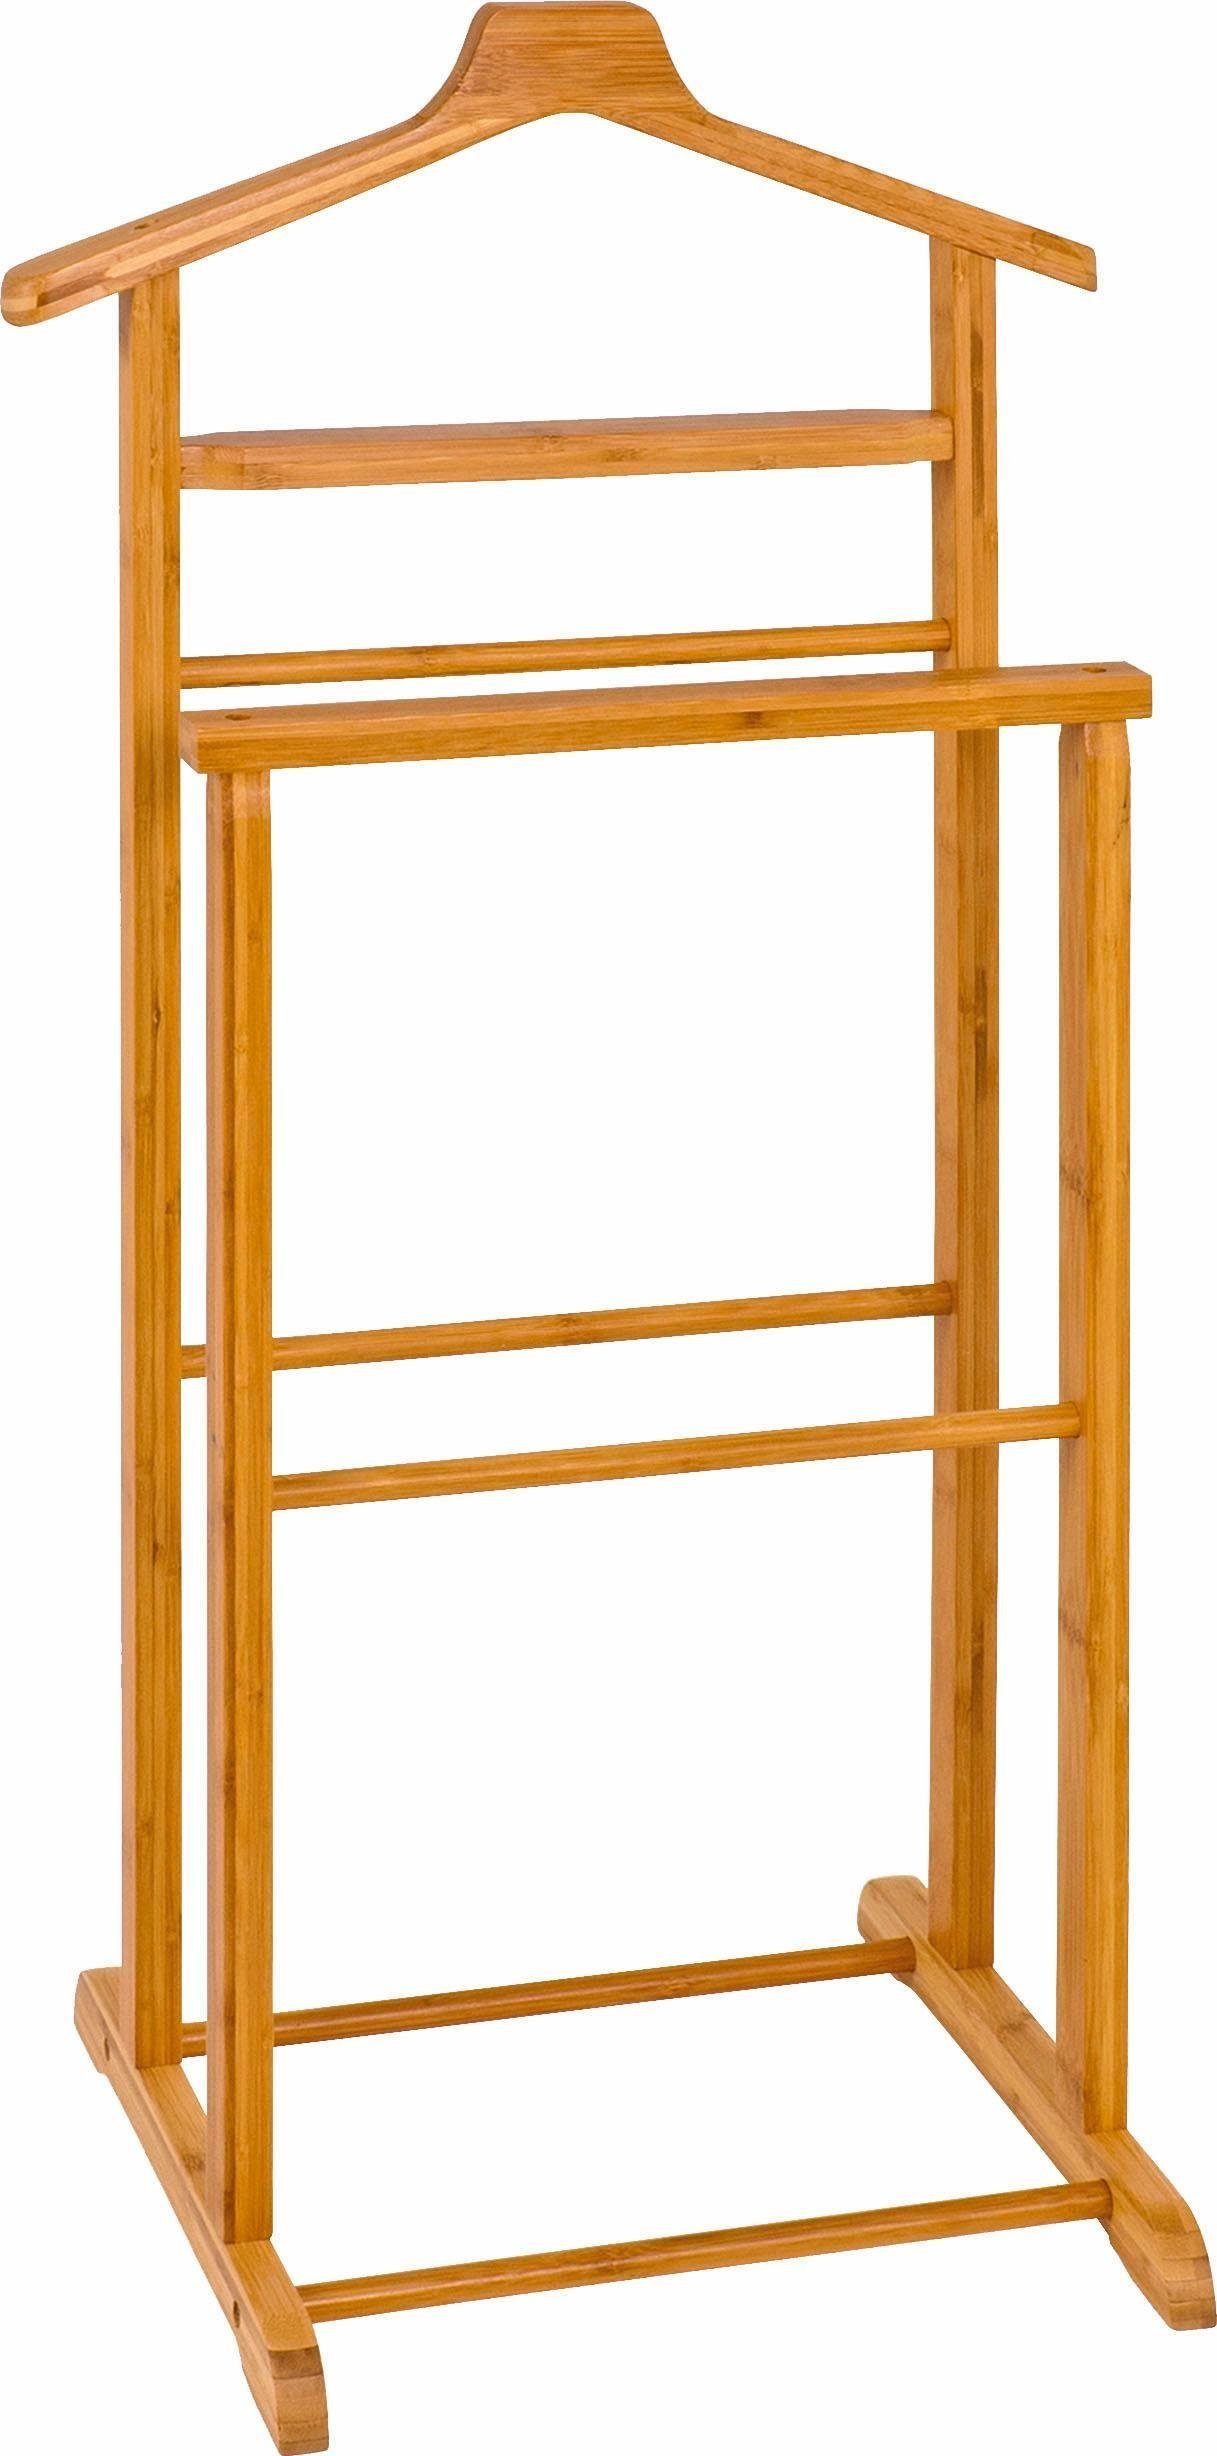 HAKU Herrendiener HAKU Möbel Herrendiener – Holz-natur – H. 97cm x B. 48cm